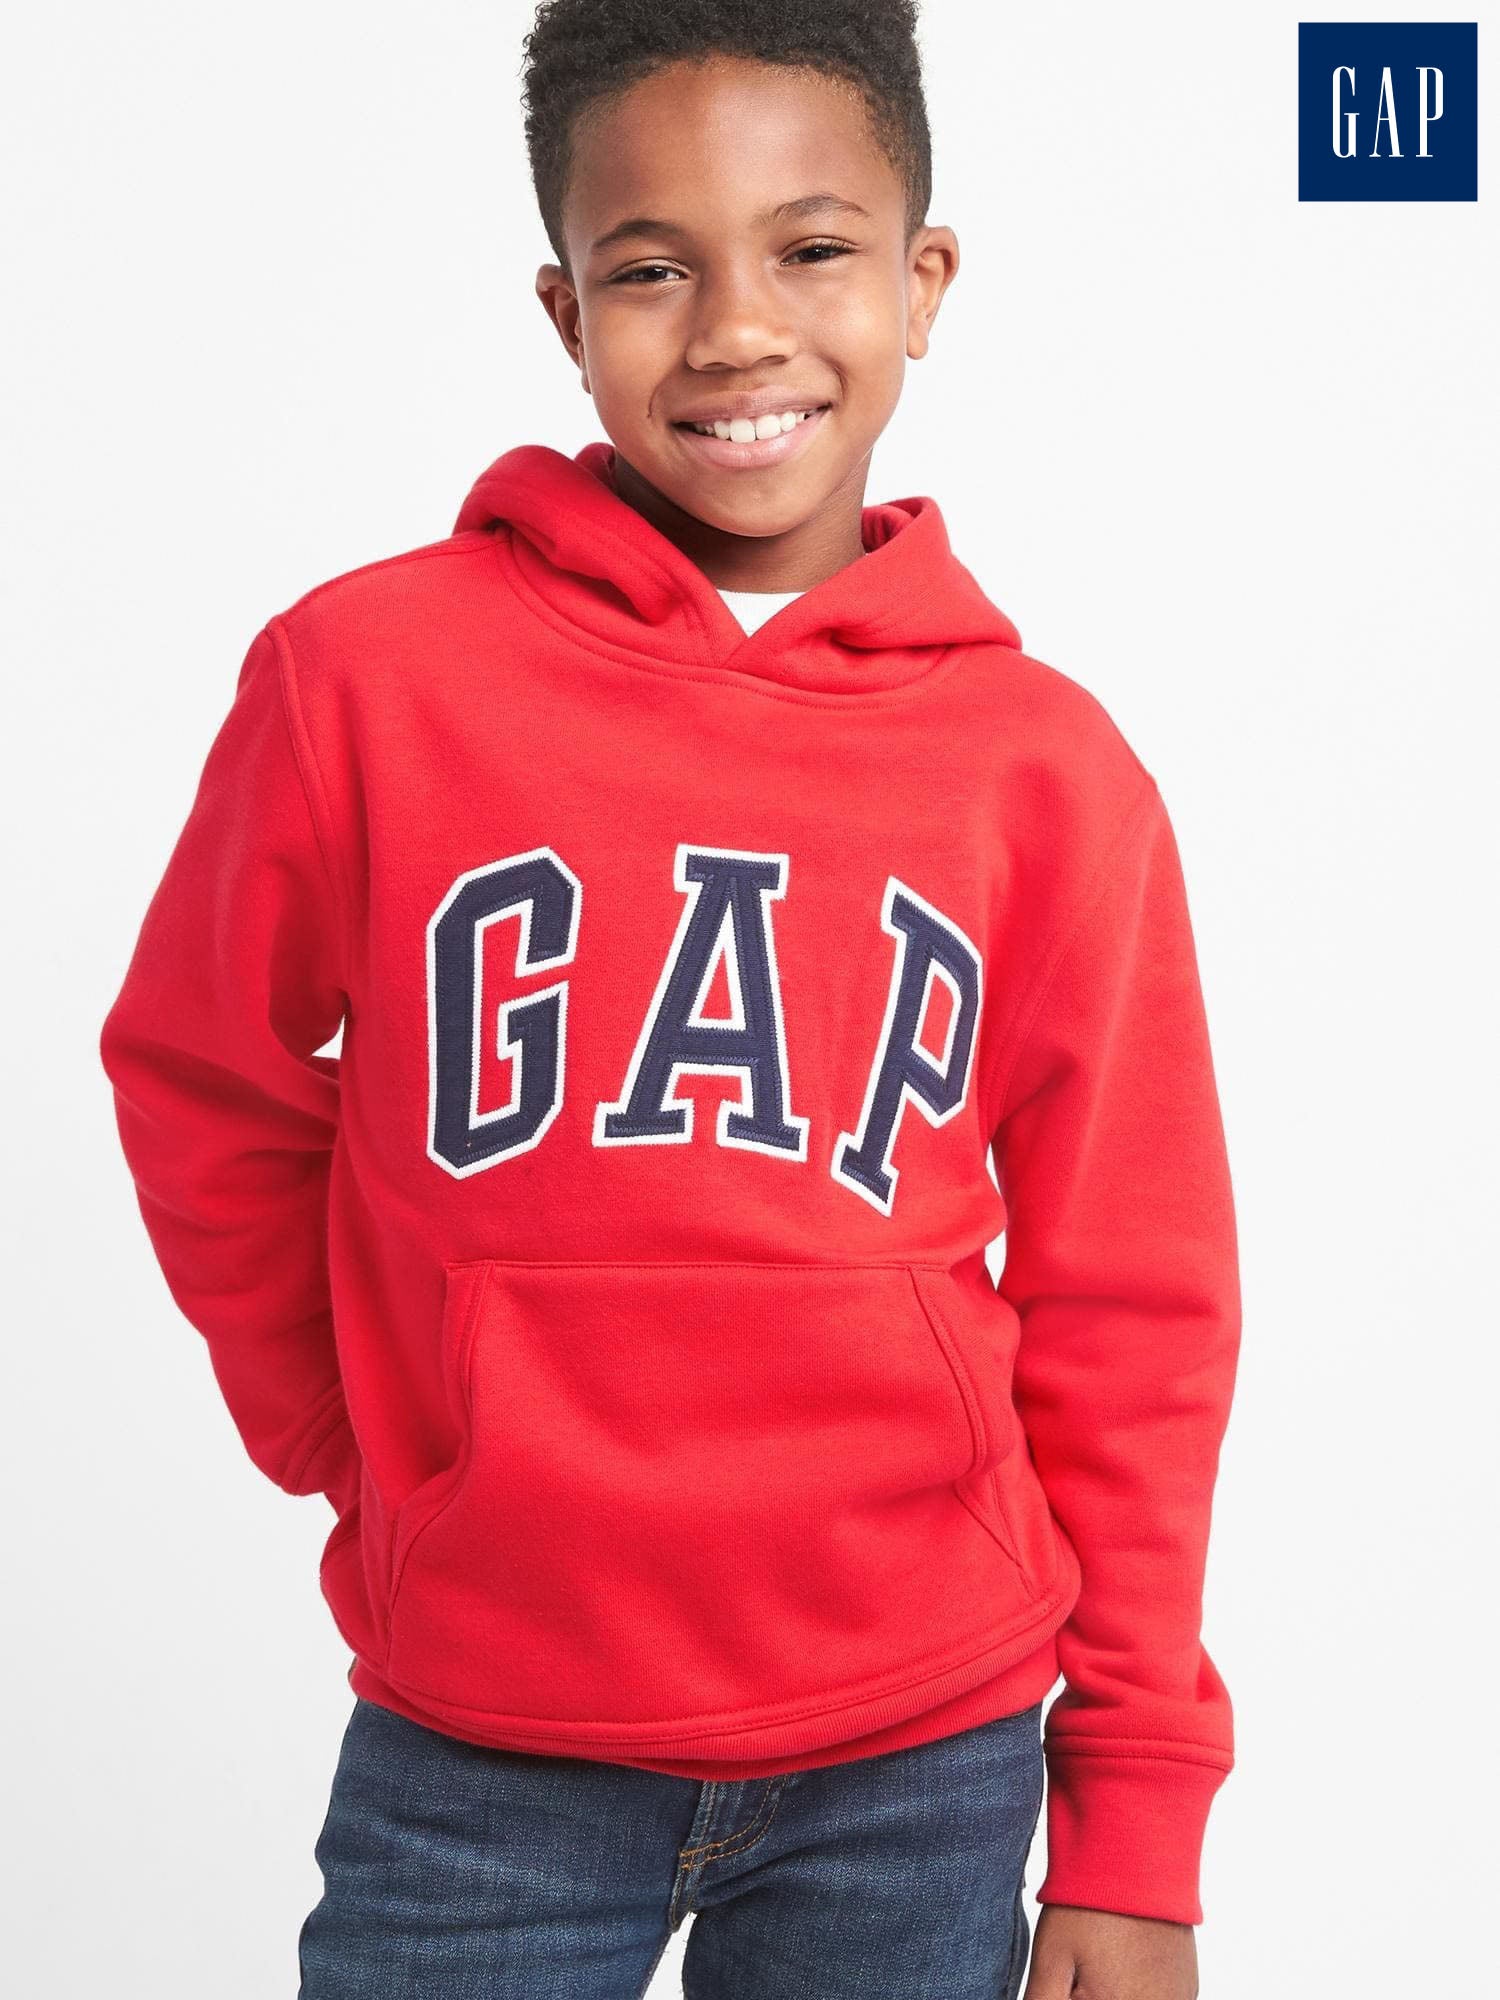 GAP-Logo Pullover Hoodie Sweatshirt